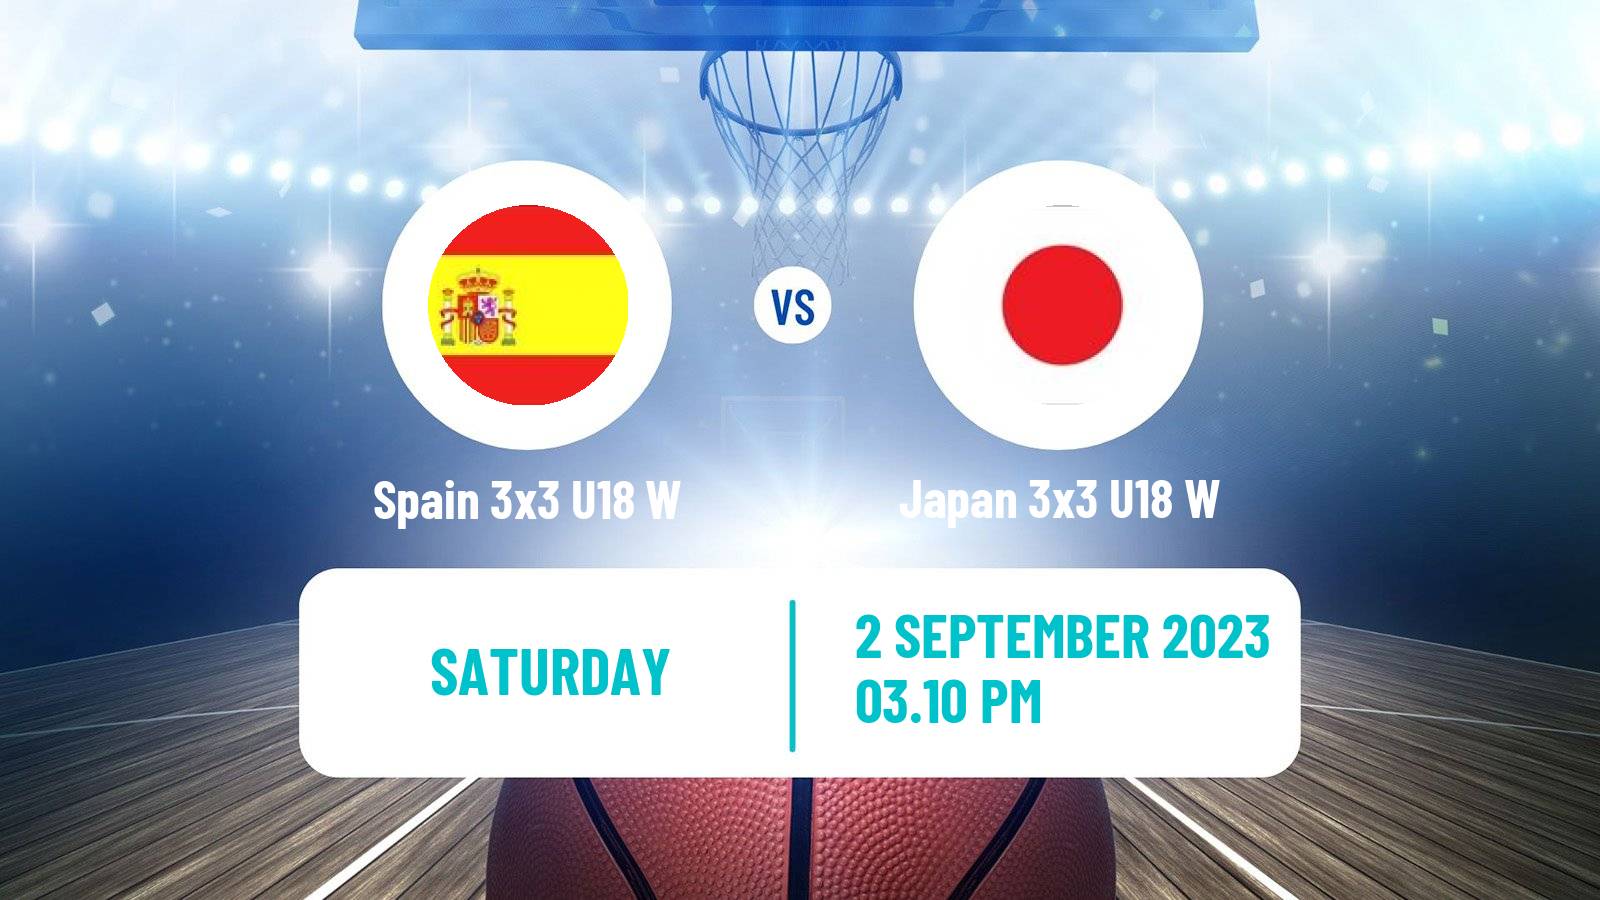 Basketball World Cup Basketball 3x3 U18 Women Spain 3x3 U18 W - Japan 3x3 U18 W